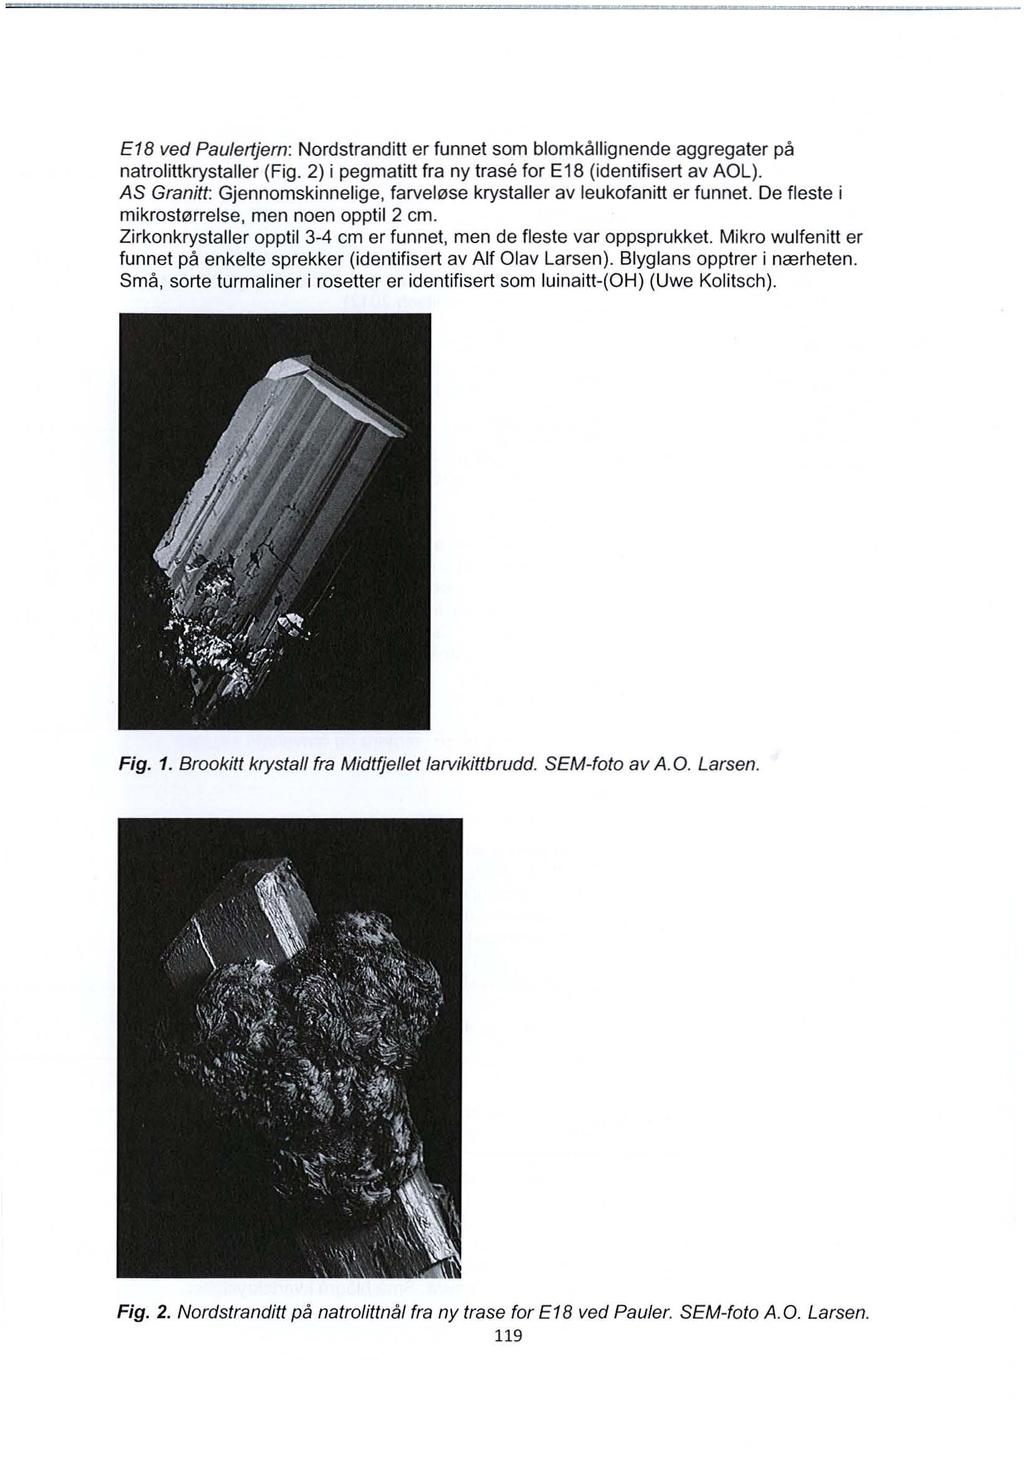 E18 ved Paulertjern: Nordstranditt er funnet som blomkallignende aggregater pa natrolittkrystaller (Fig. 2) i pegmatitt fra ny trase for E18 (identifisert av AOL).